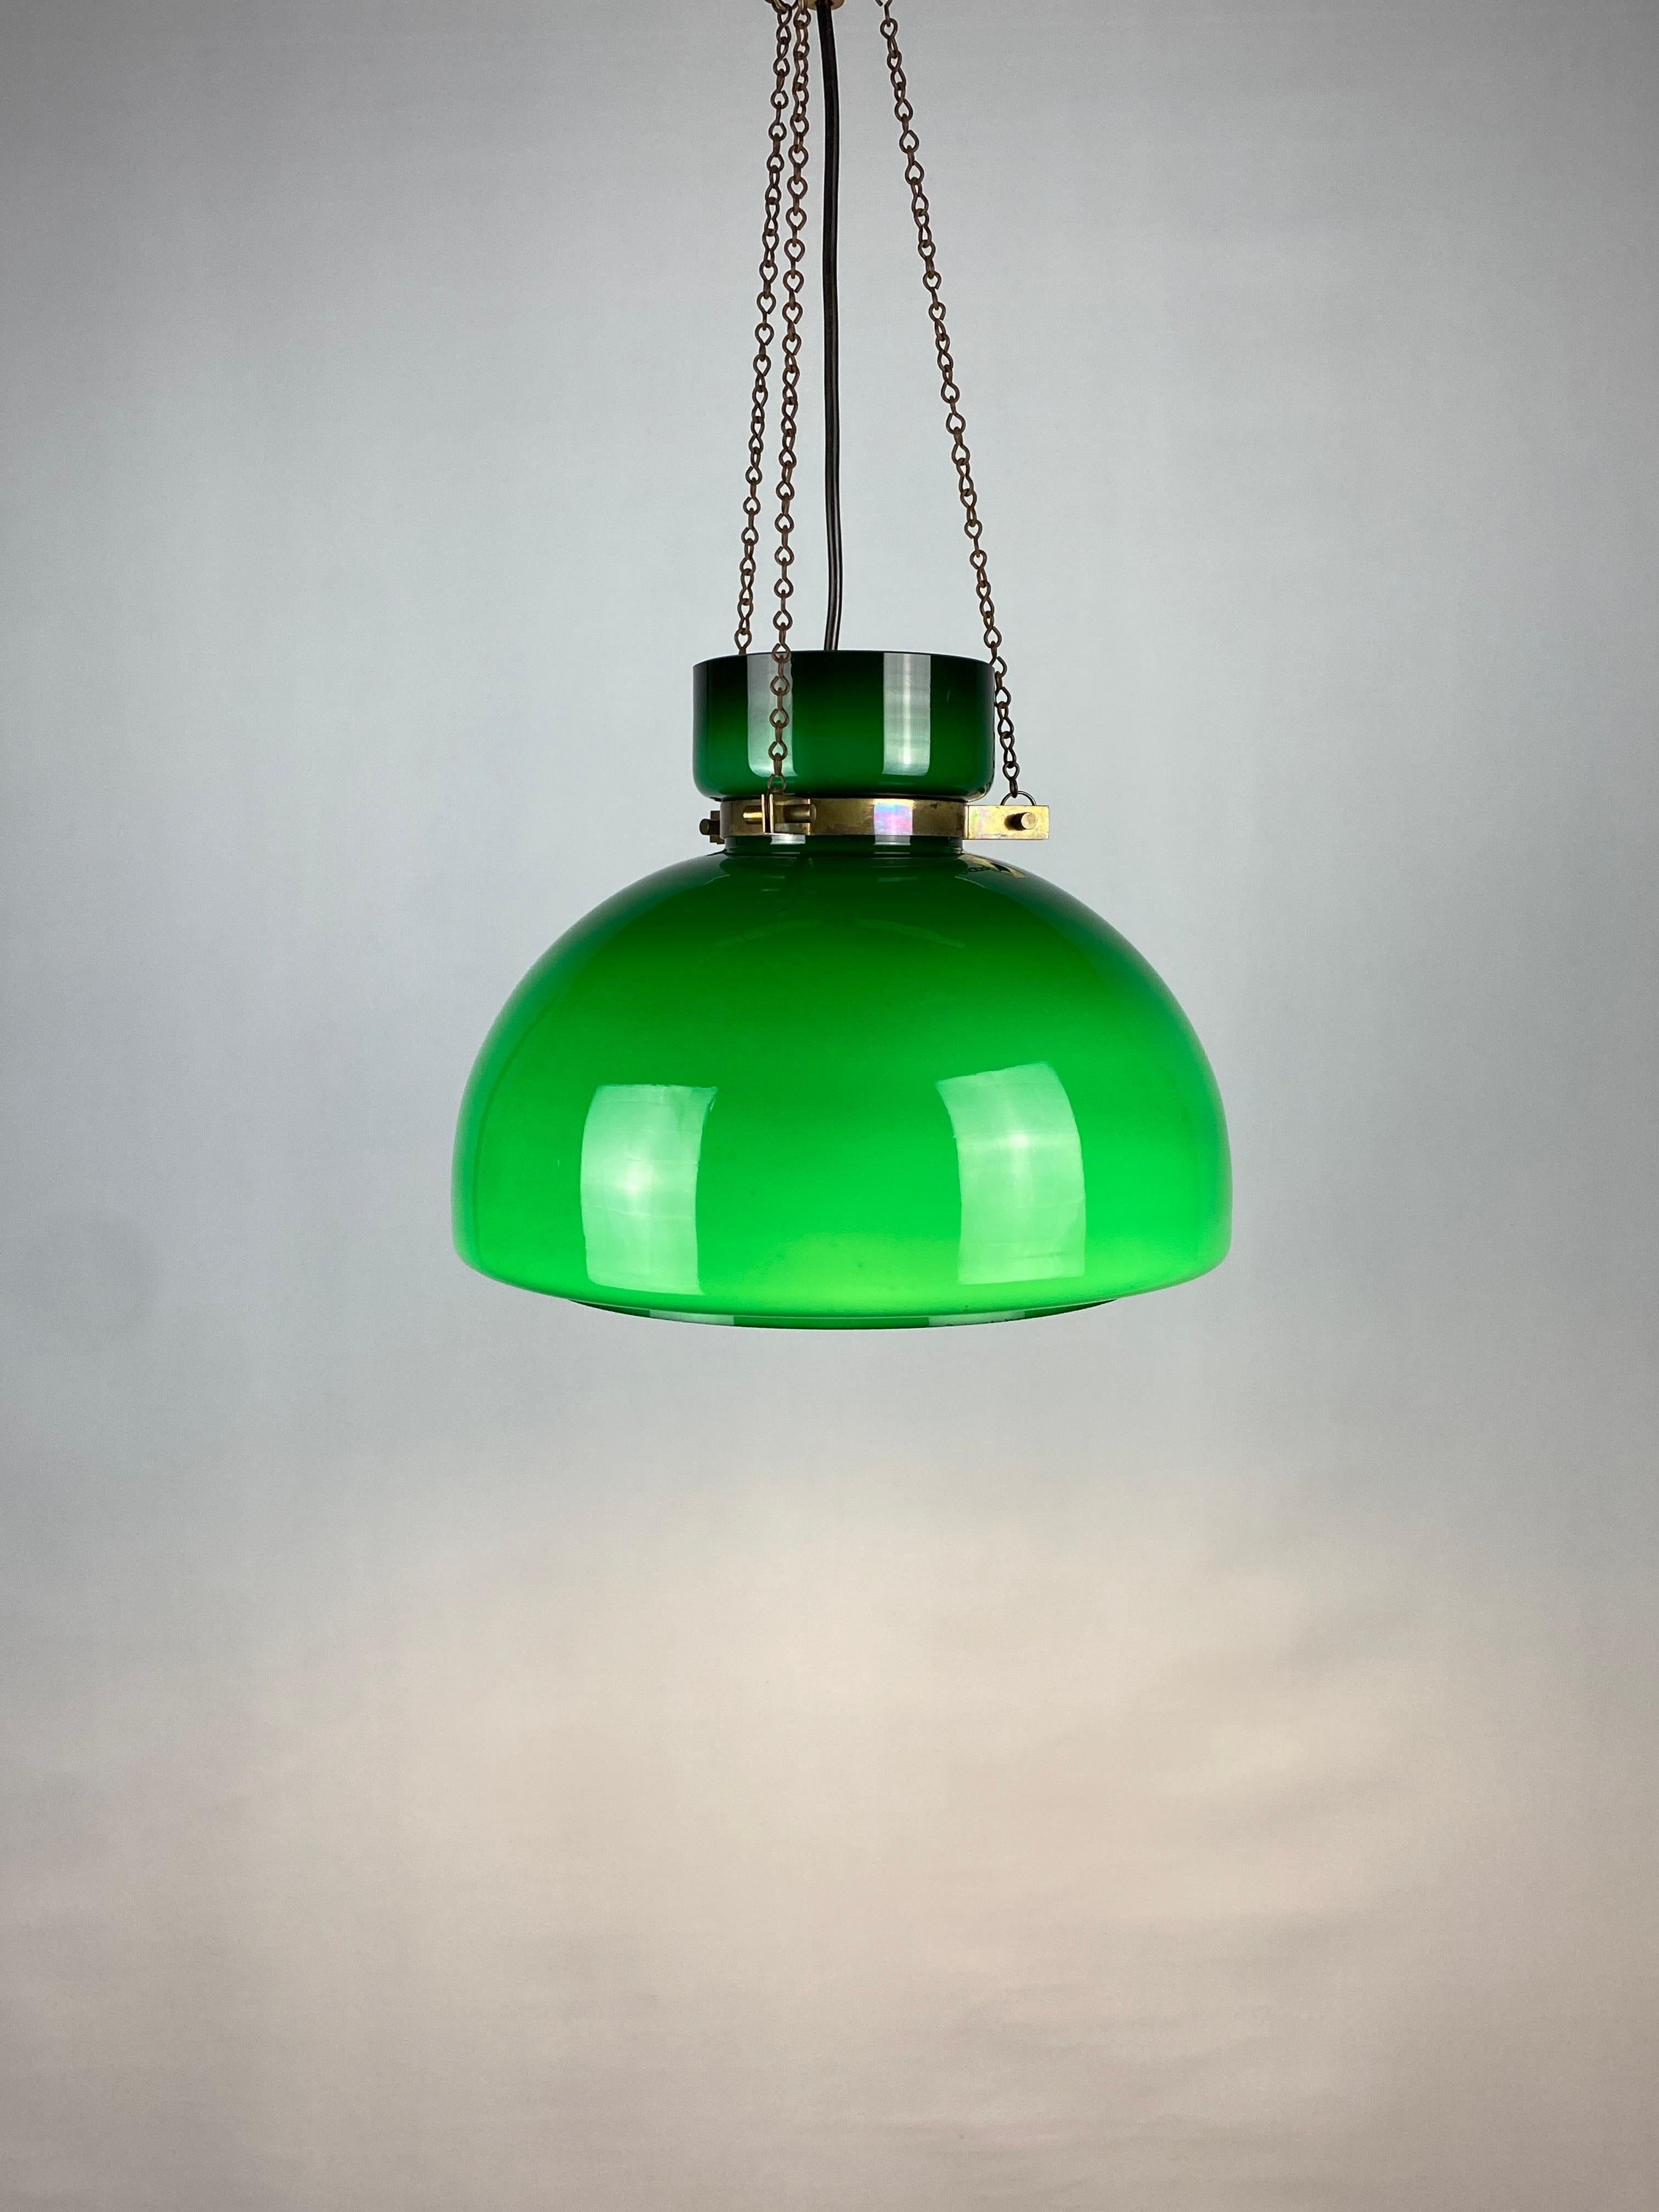 Large Green Glass Pendant Light by Herbert Proft for Glashütte Limburg 1970 For Sale 9